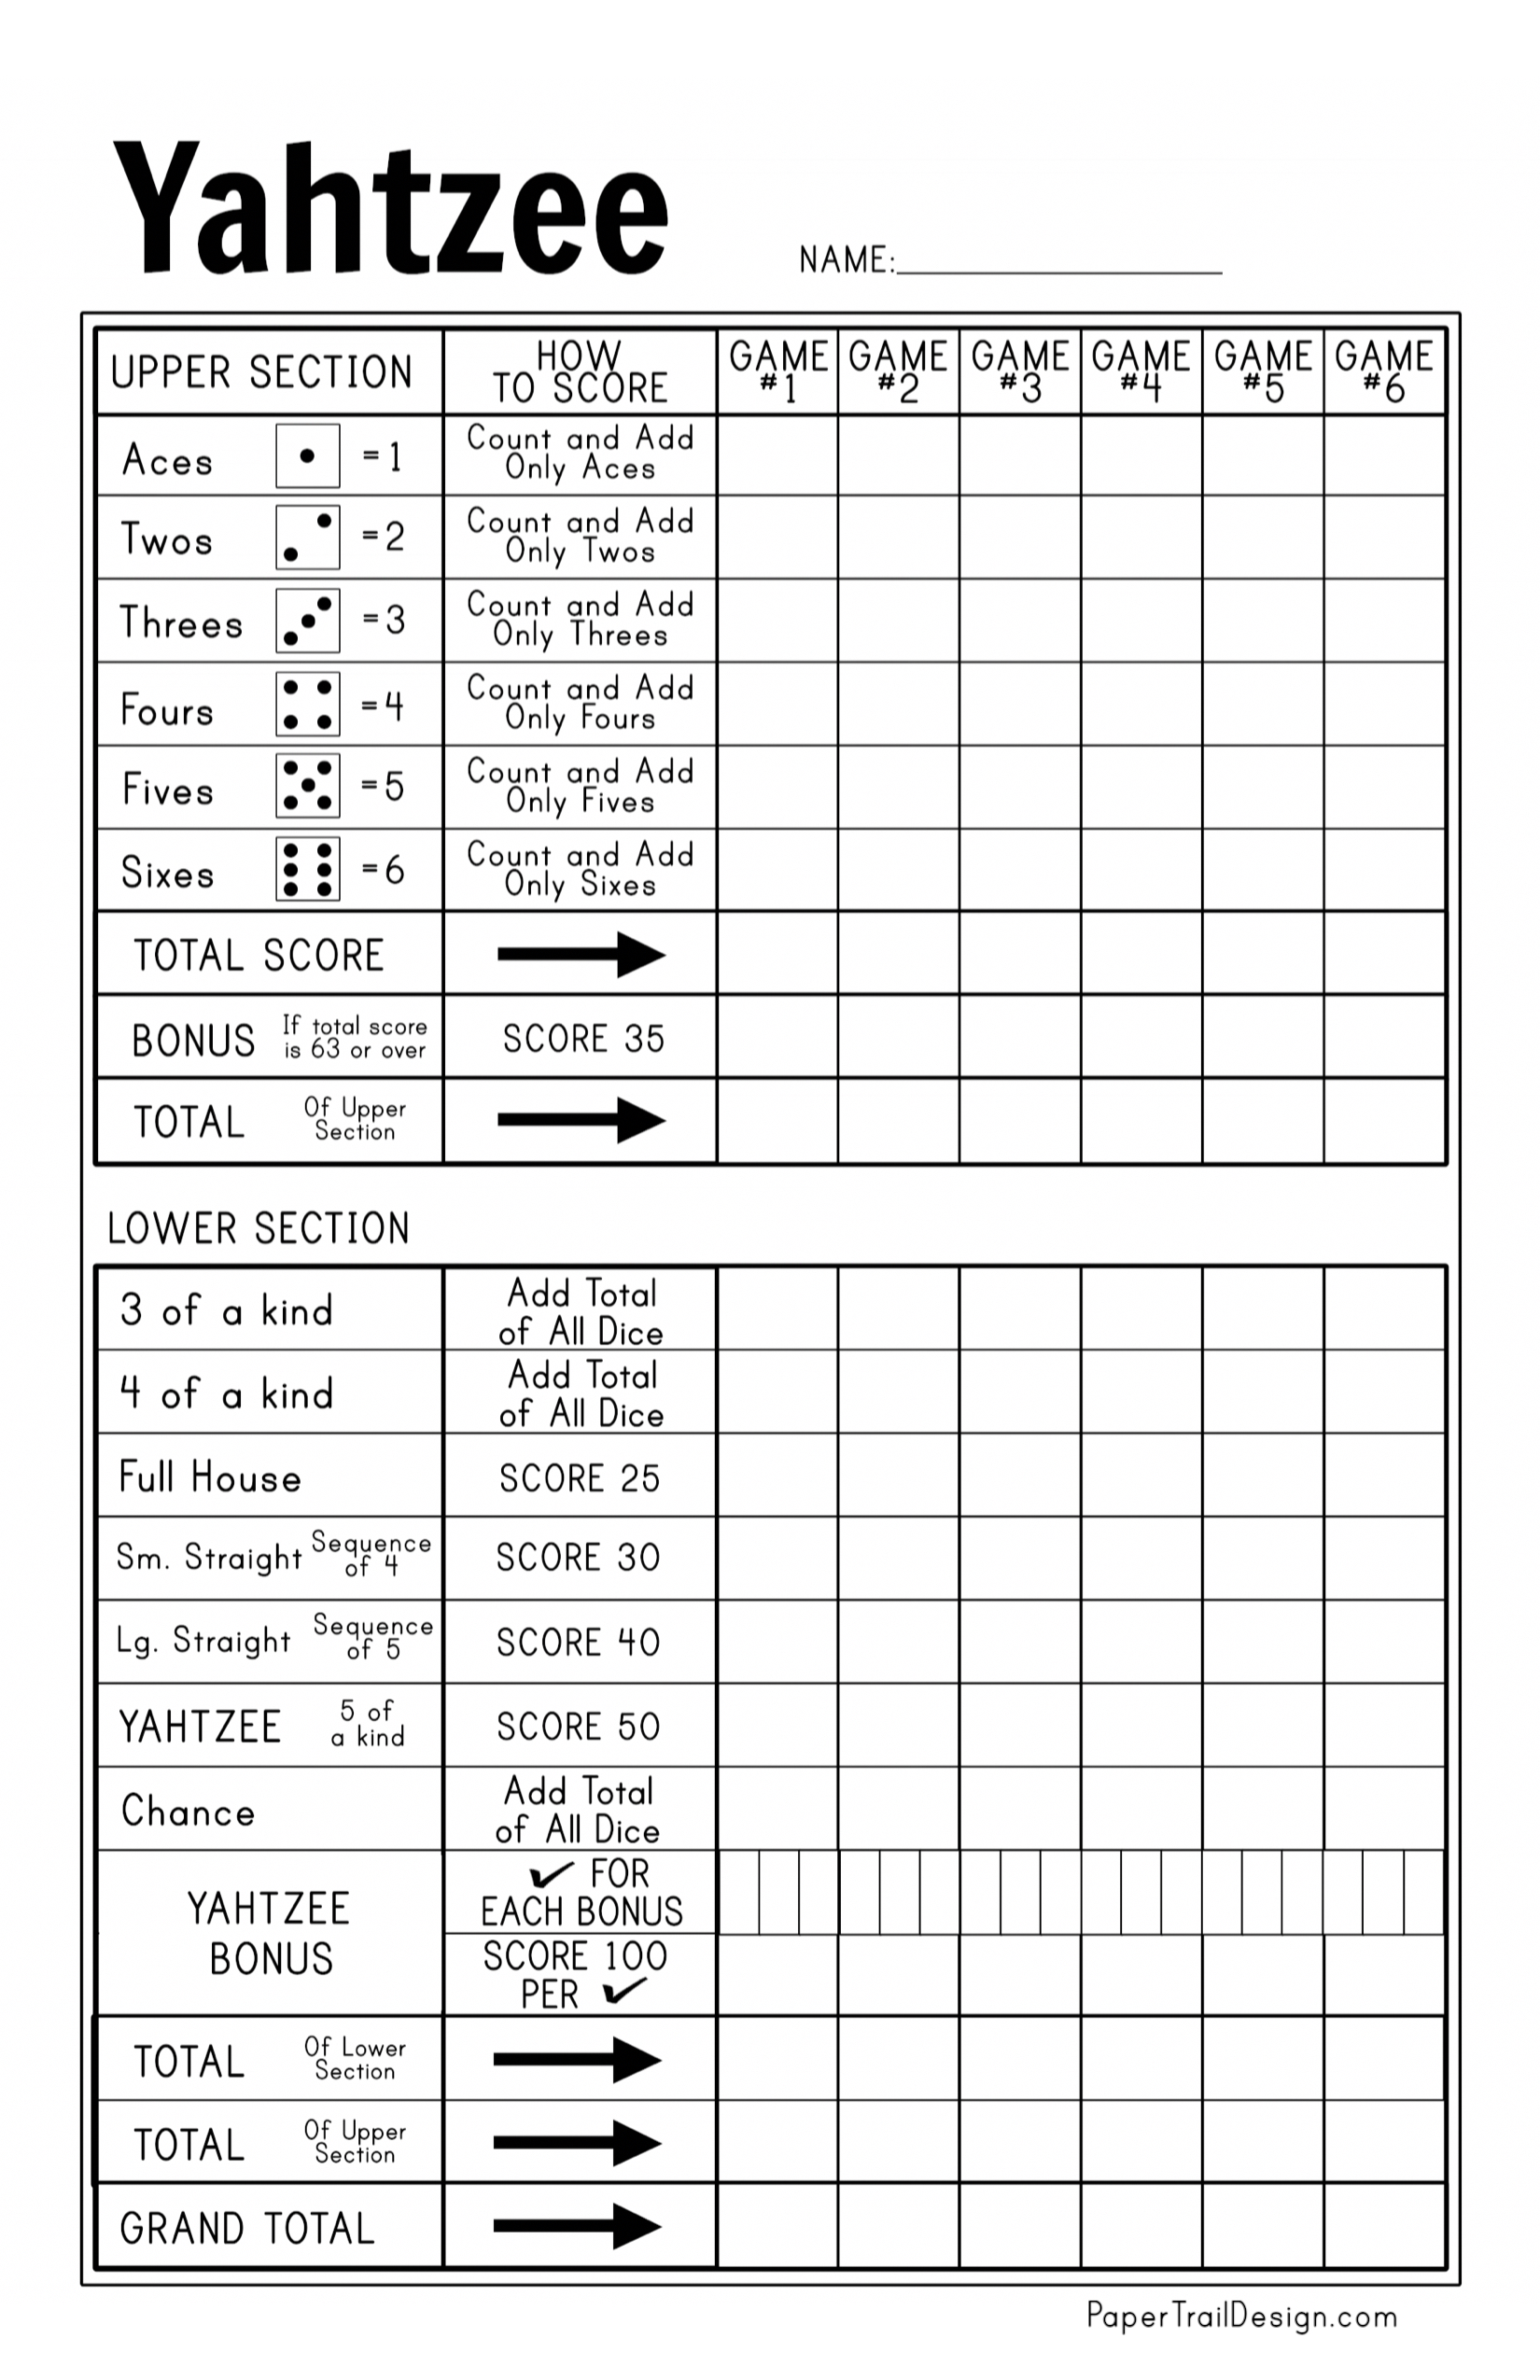 Score Cards Pads Pages Refills Scorecards Notes Yahtzee Score Sheets 